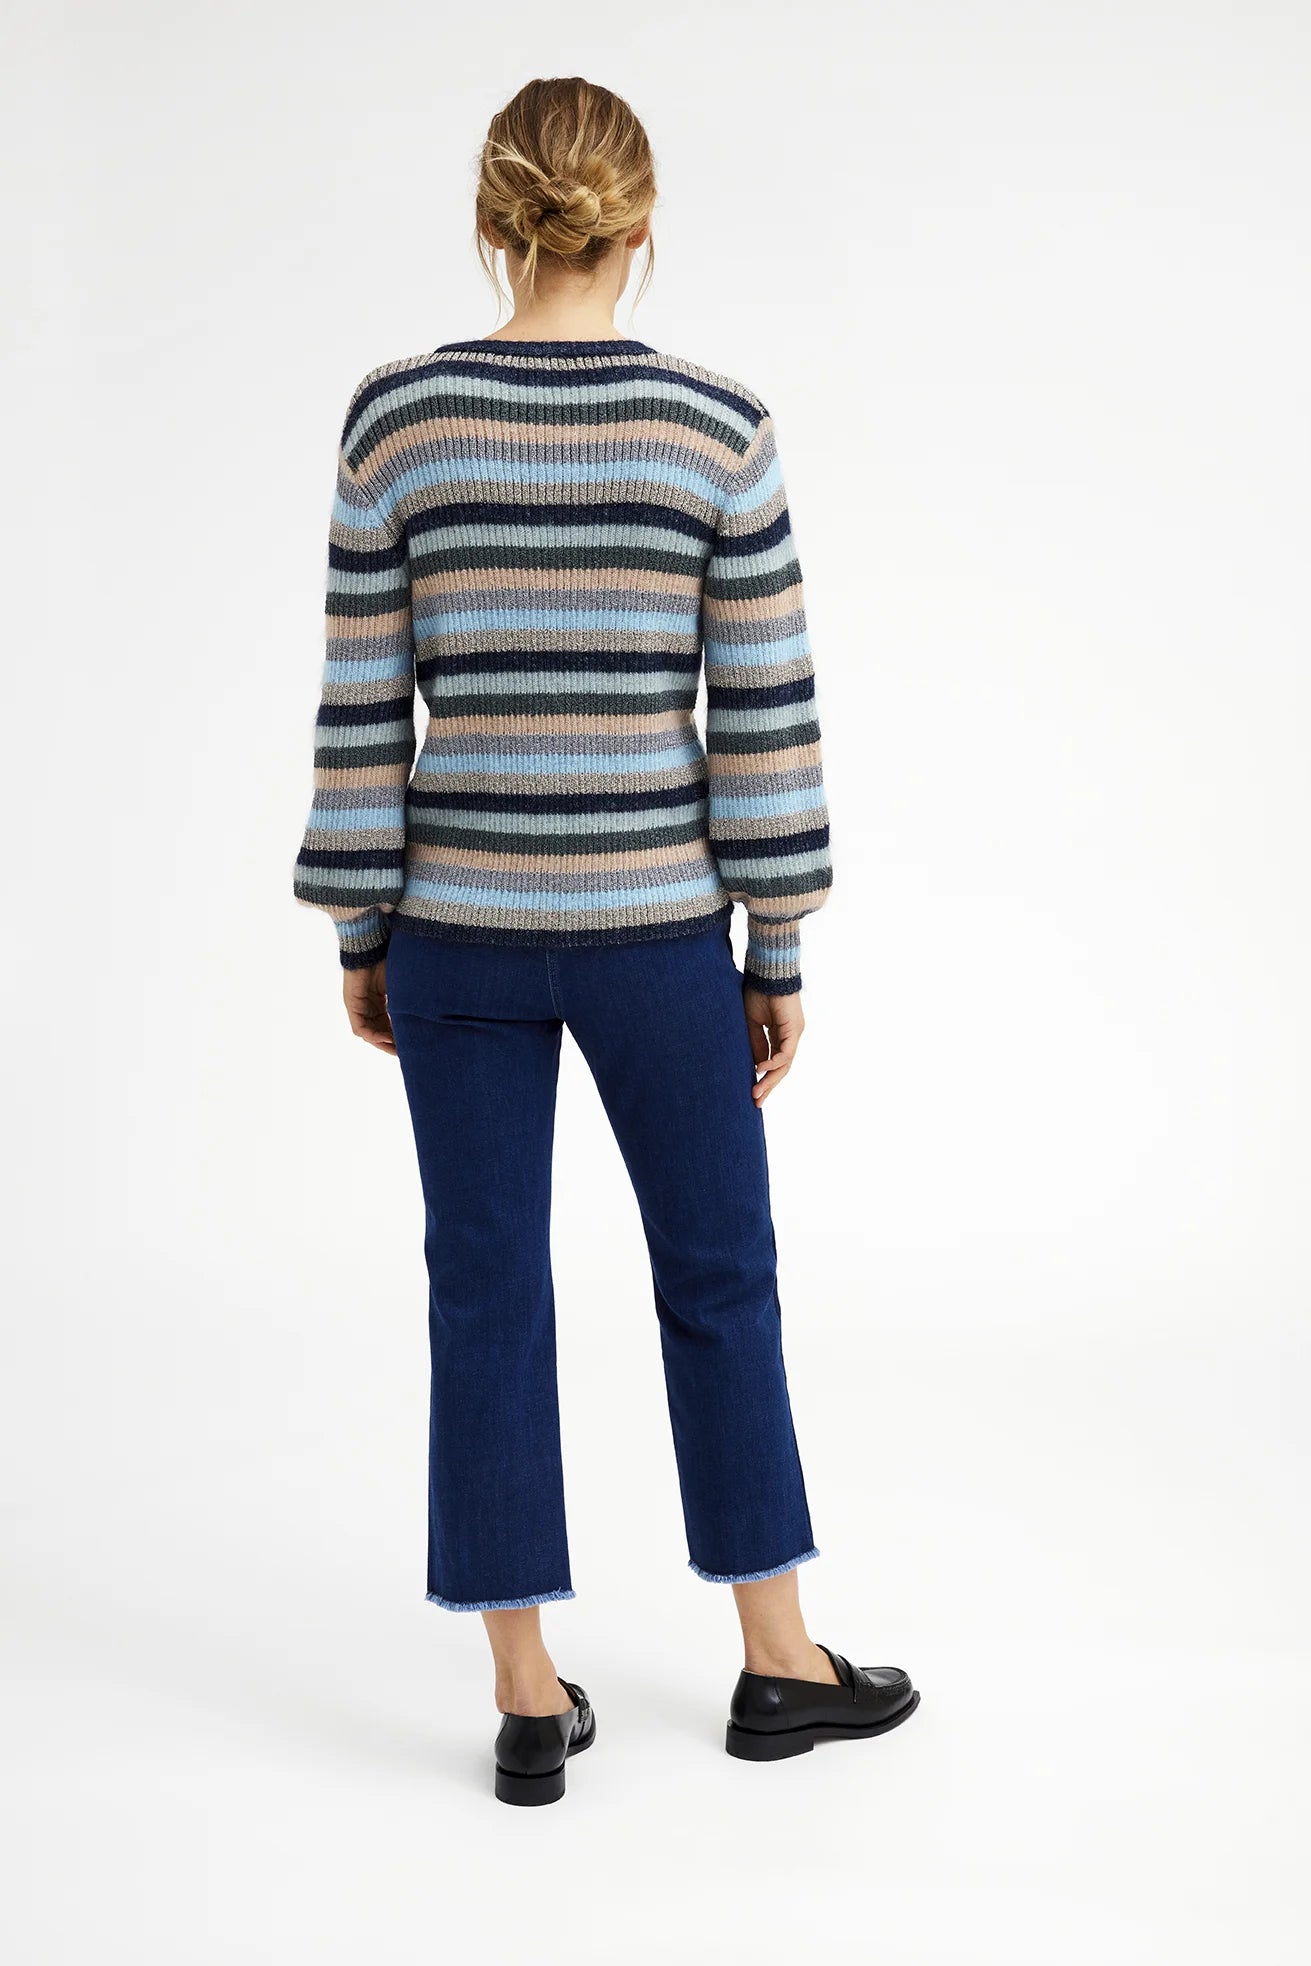 GUSTAV Shanne multi Stripe Pullover